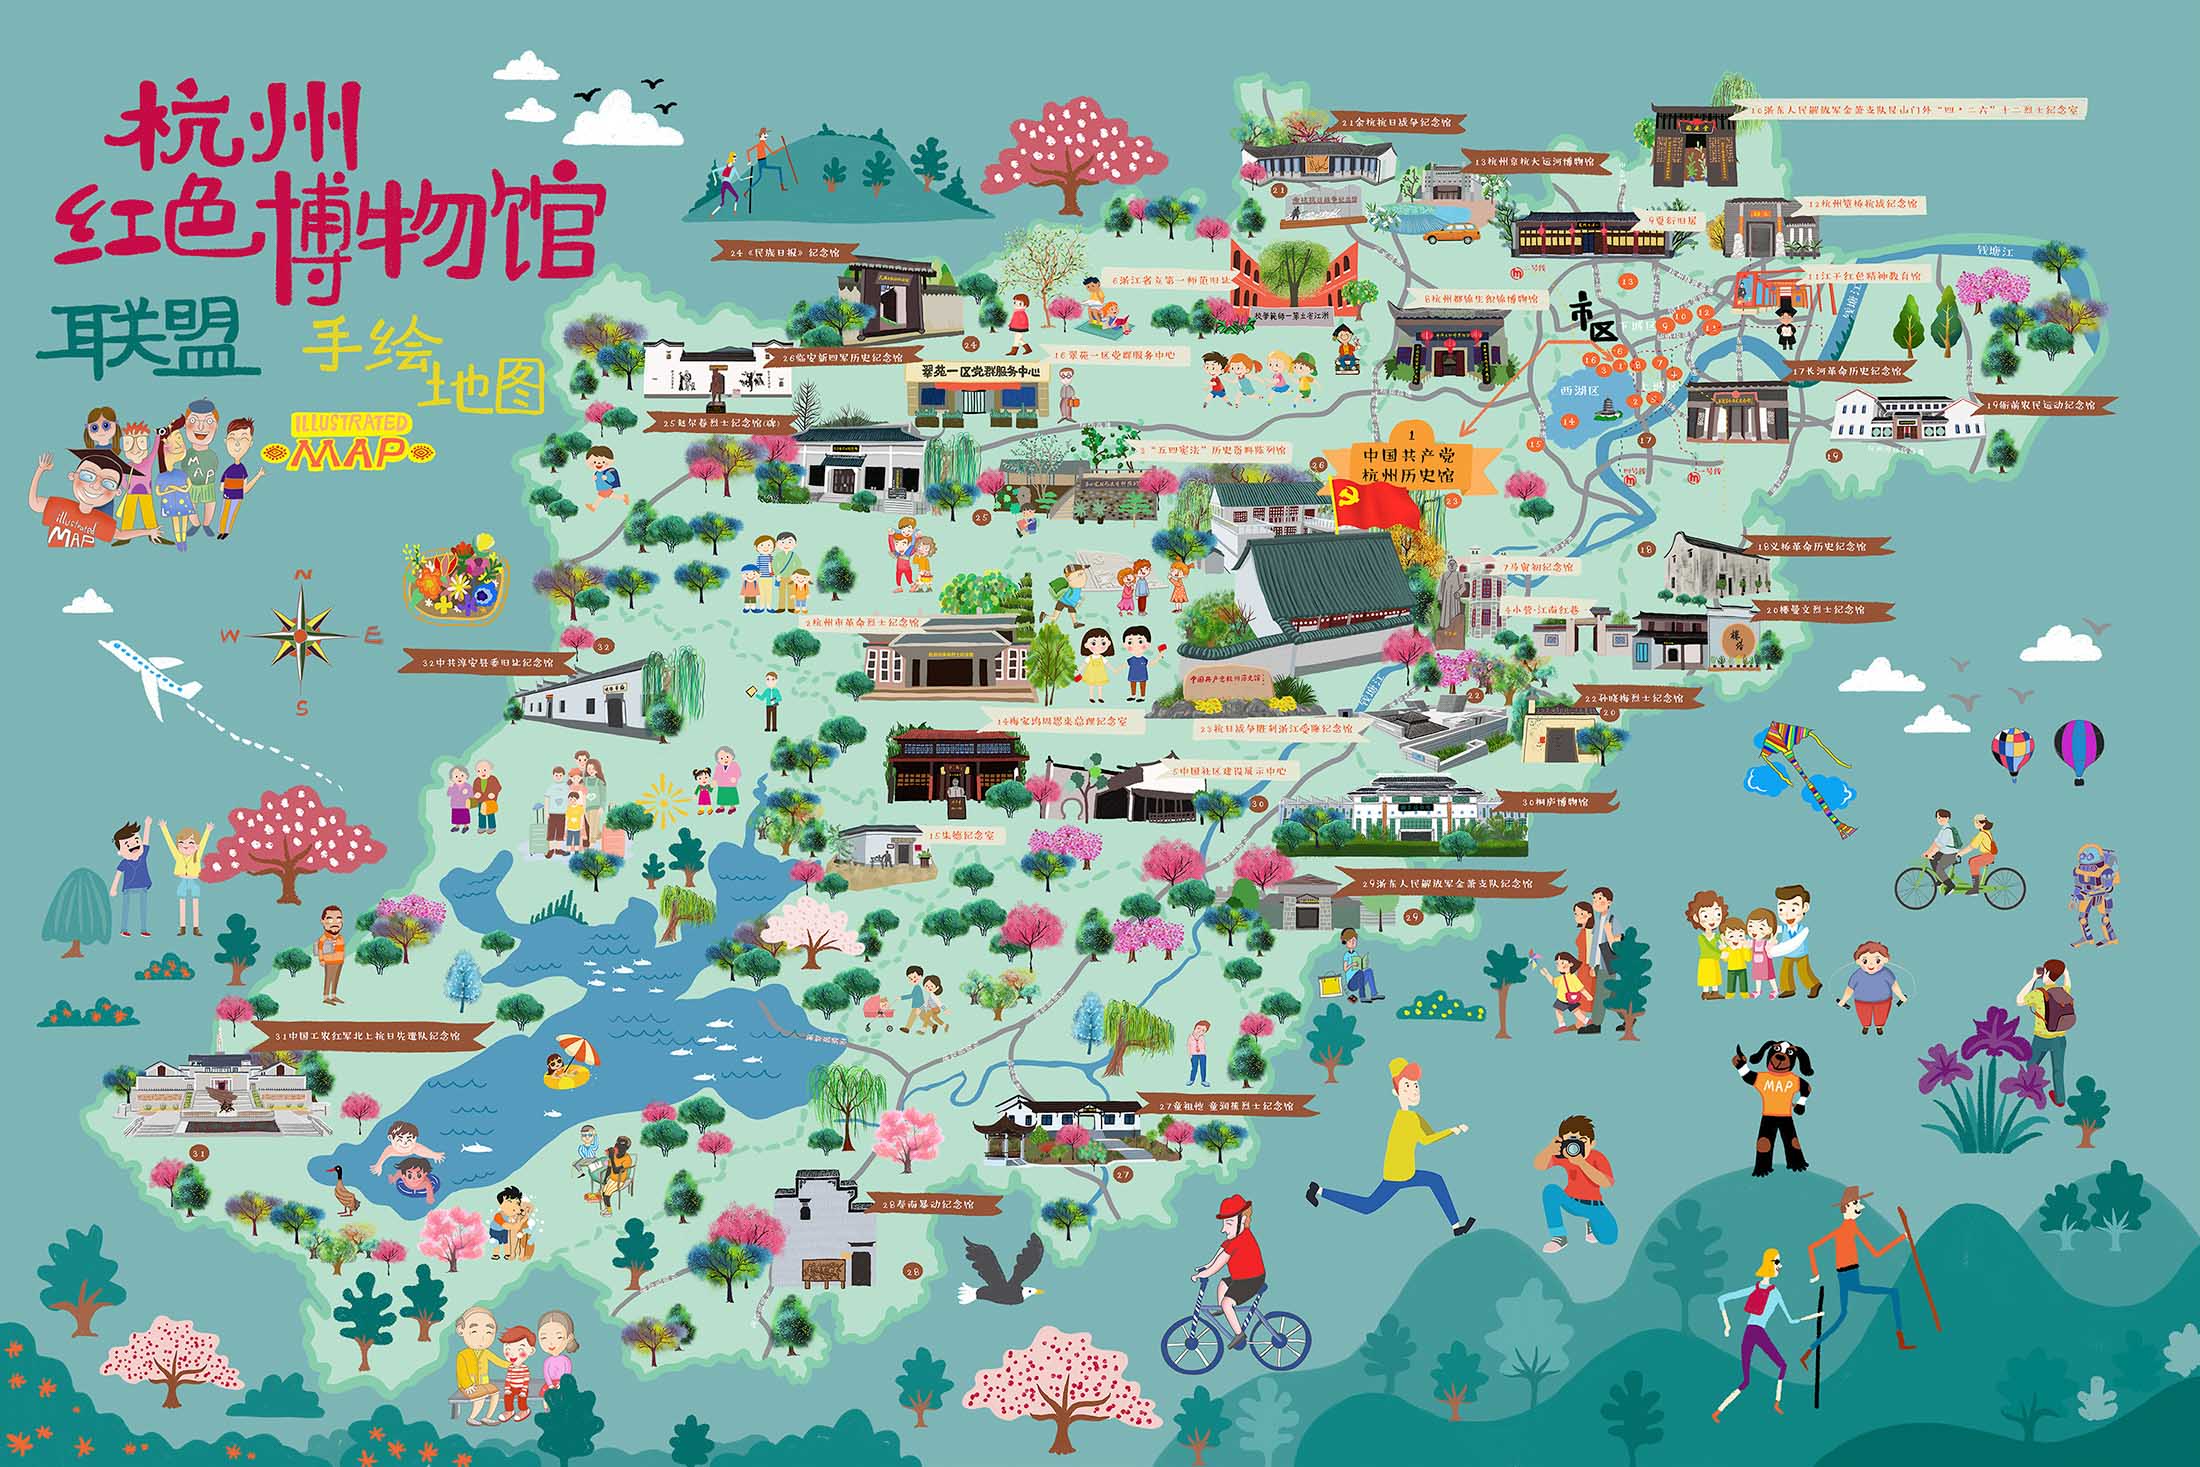 惠城手绘地图与科技的完美结合 